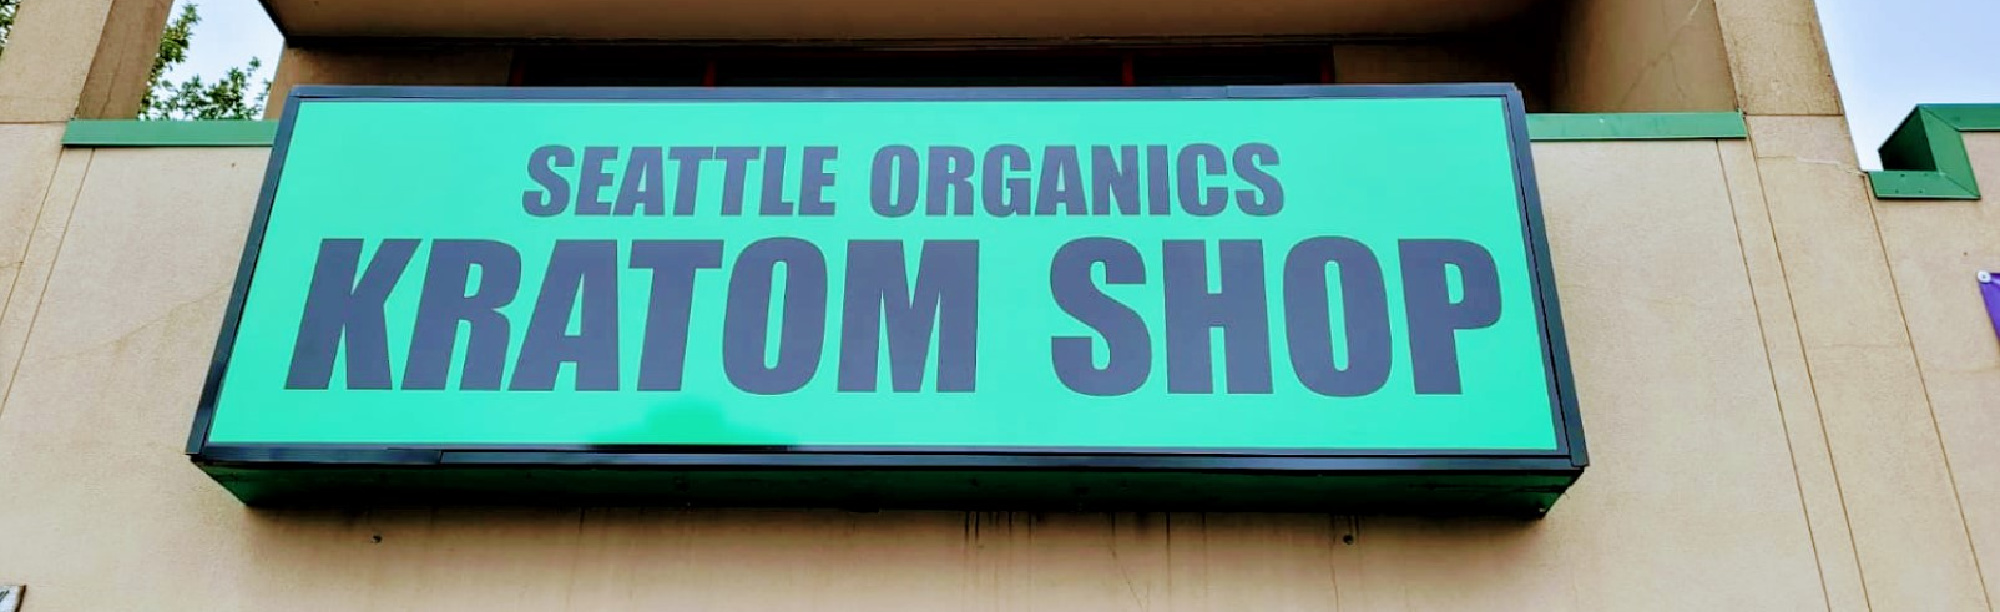 image of seattle organics kratom shop in seattle wa